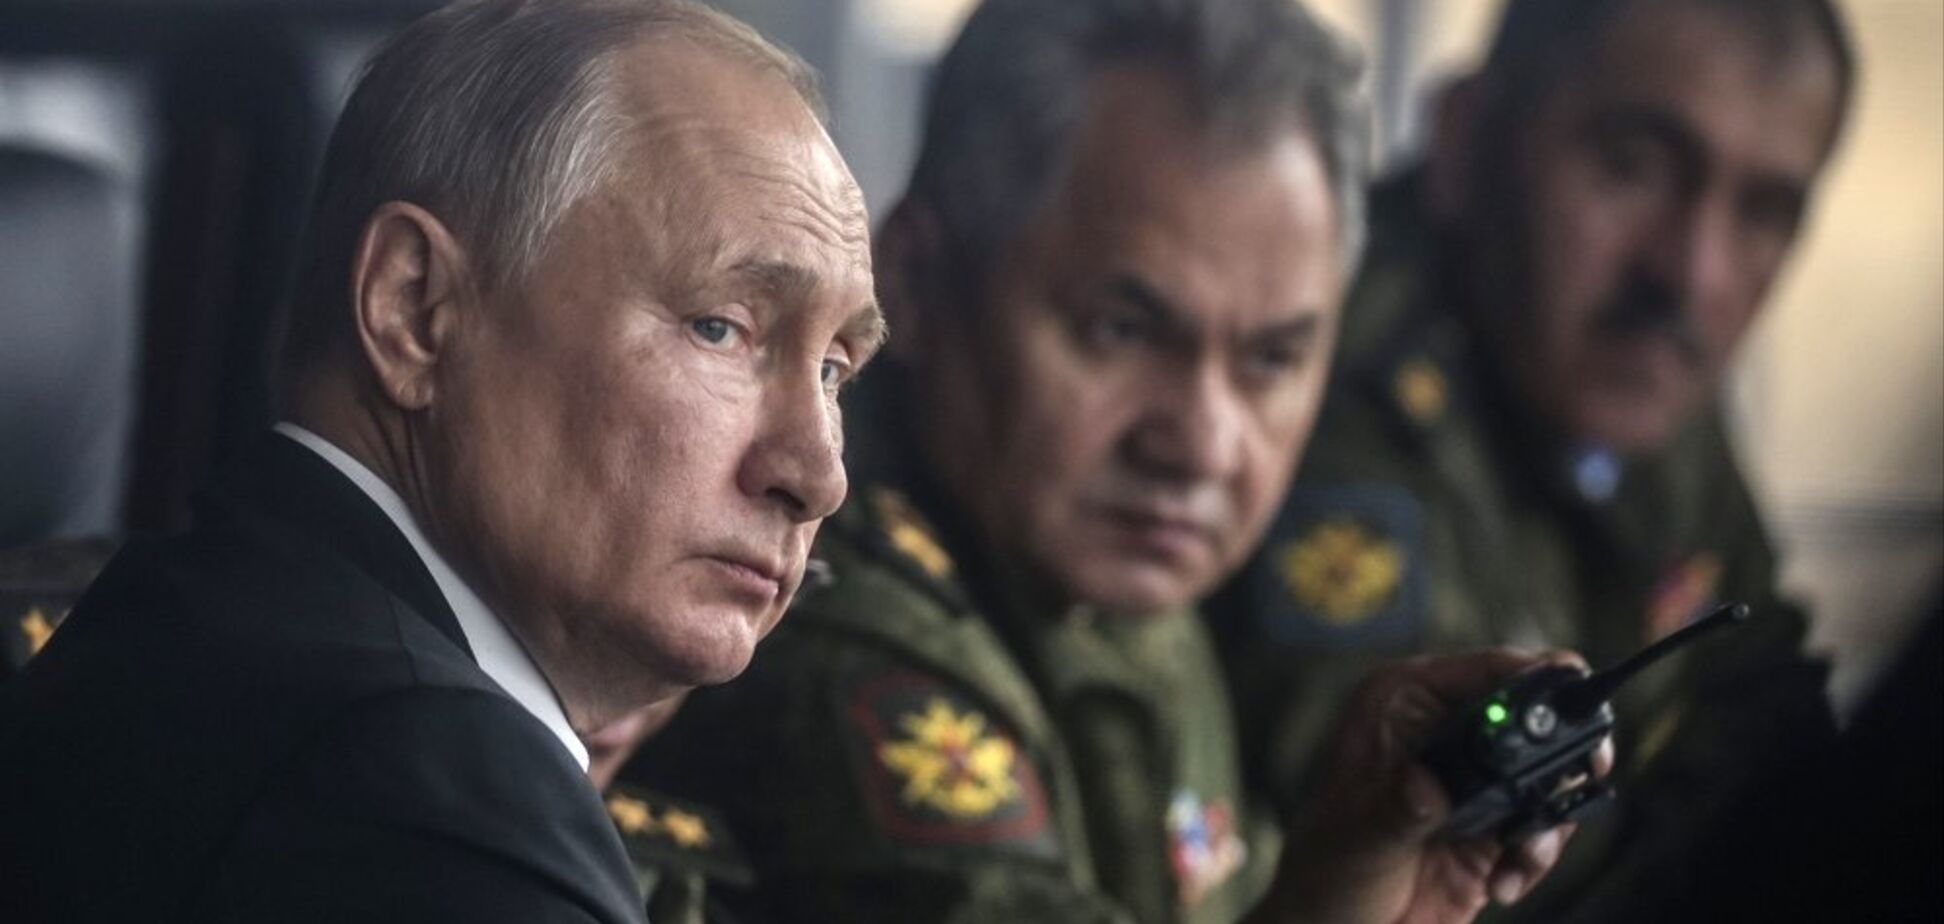 У армии Путина есть три причины, чтобы активизироваться. Интервью с военным экспертом Мельником